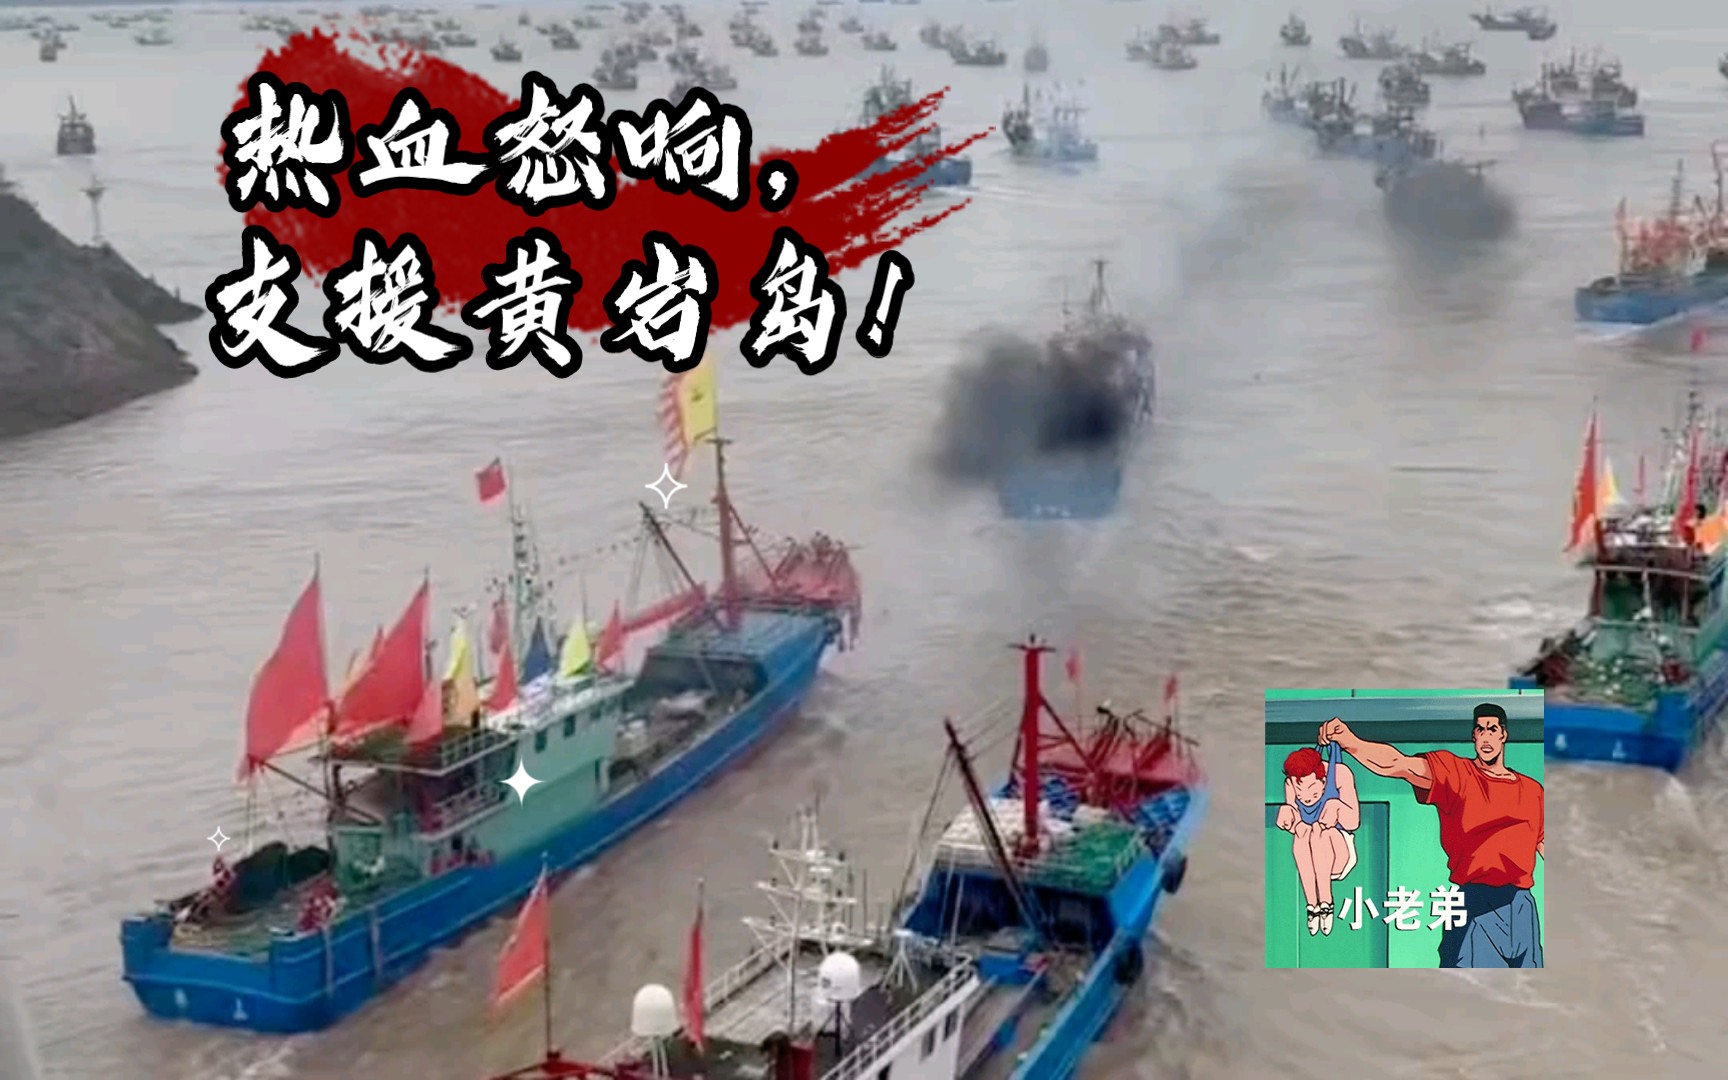 热血怒响，声振四海! 中国渔民全力支援黄岩岛